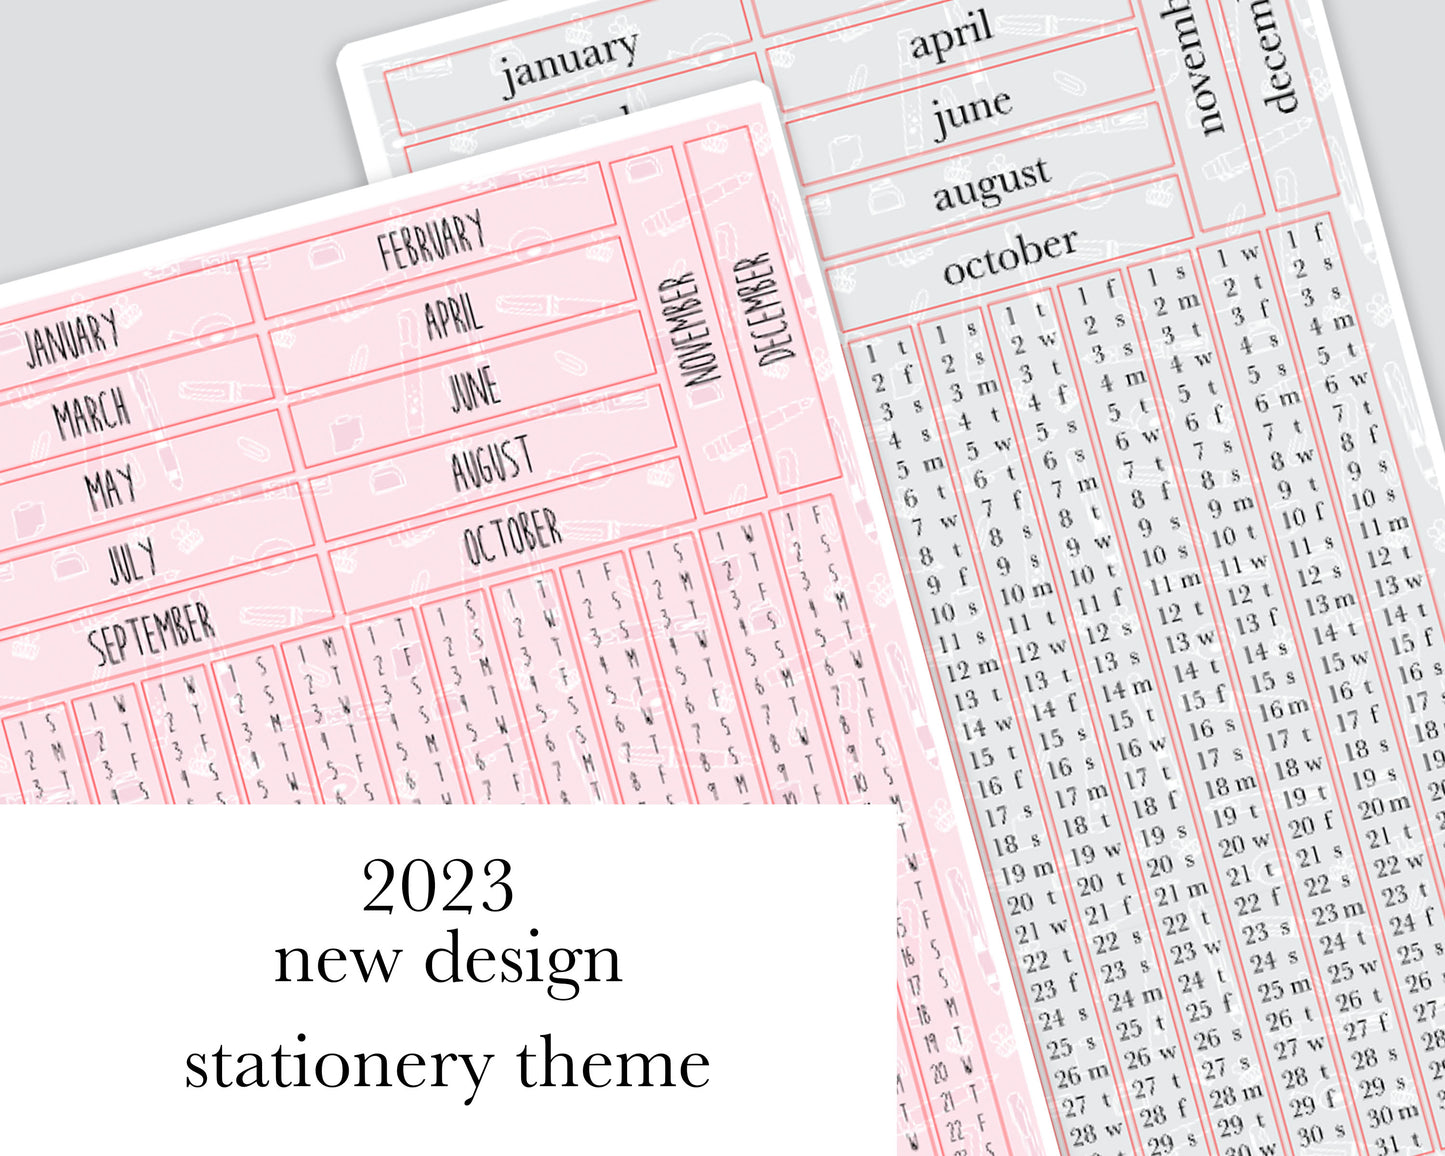 Yearly Kit |Hobonichi A6| 2023